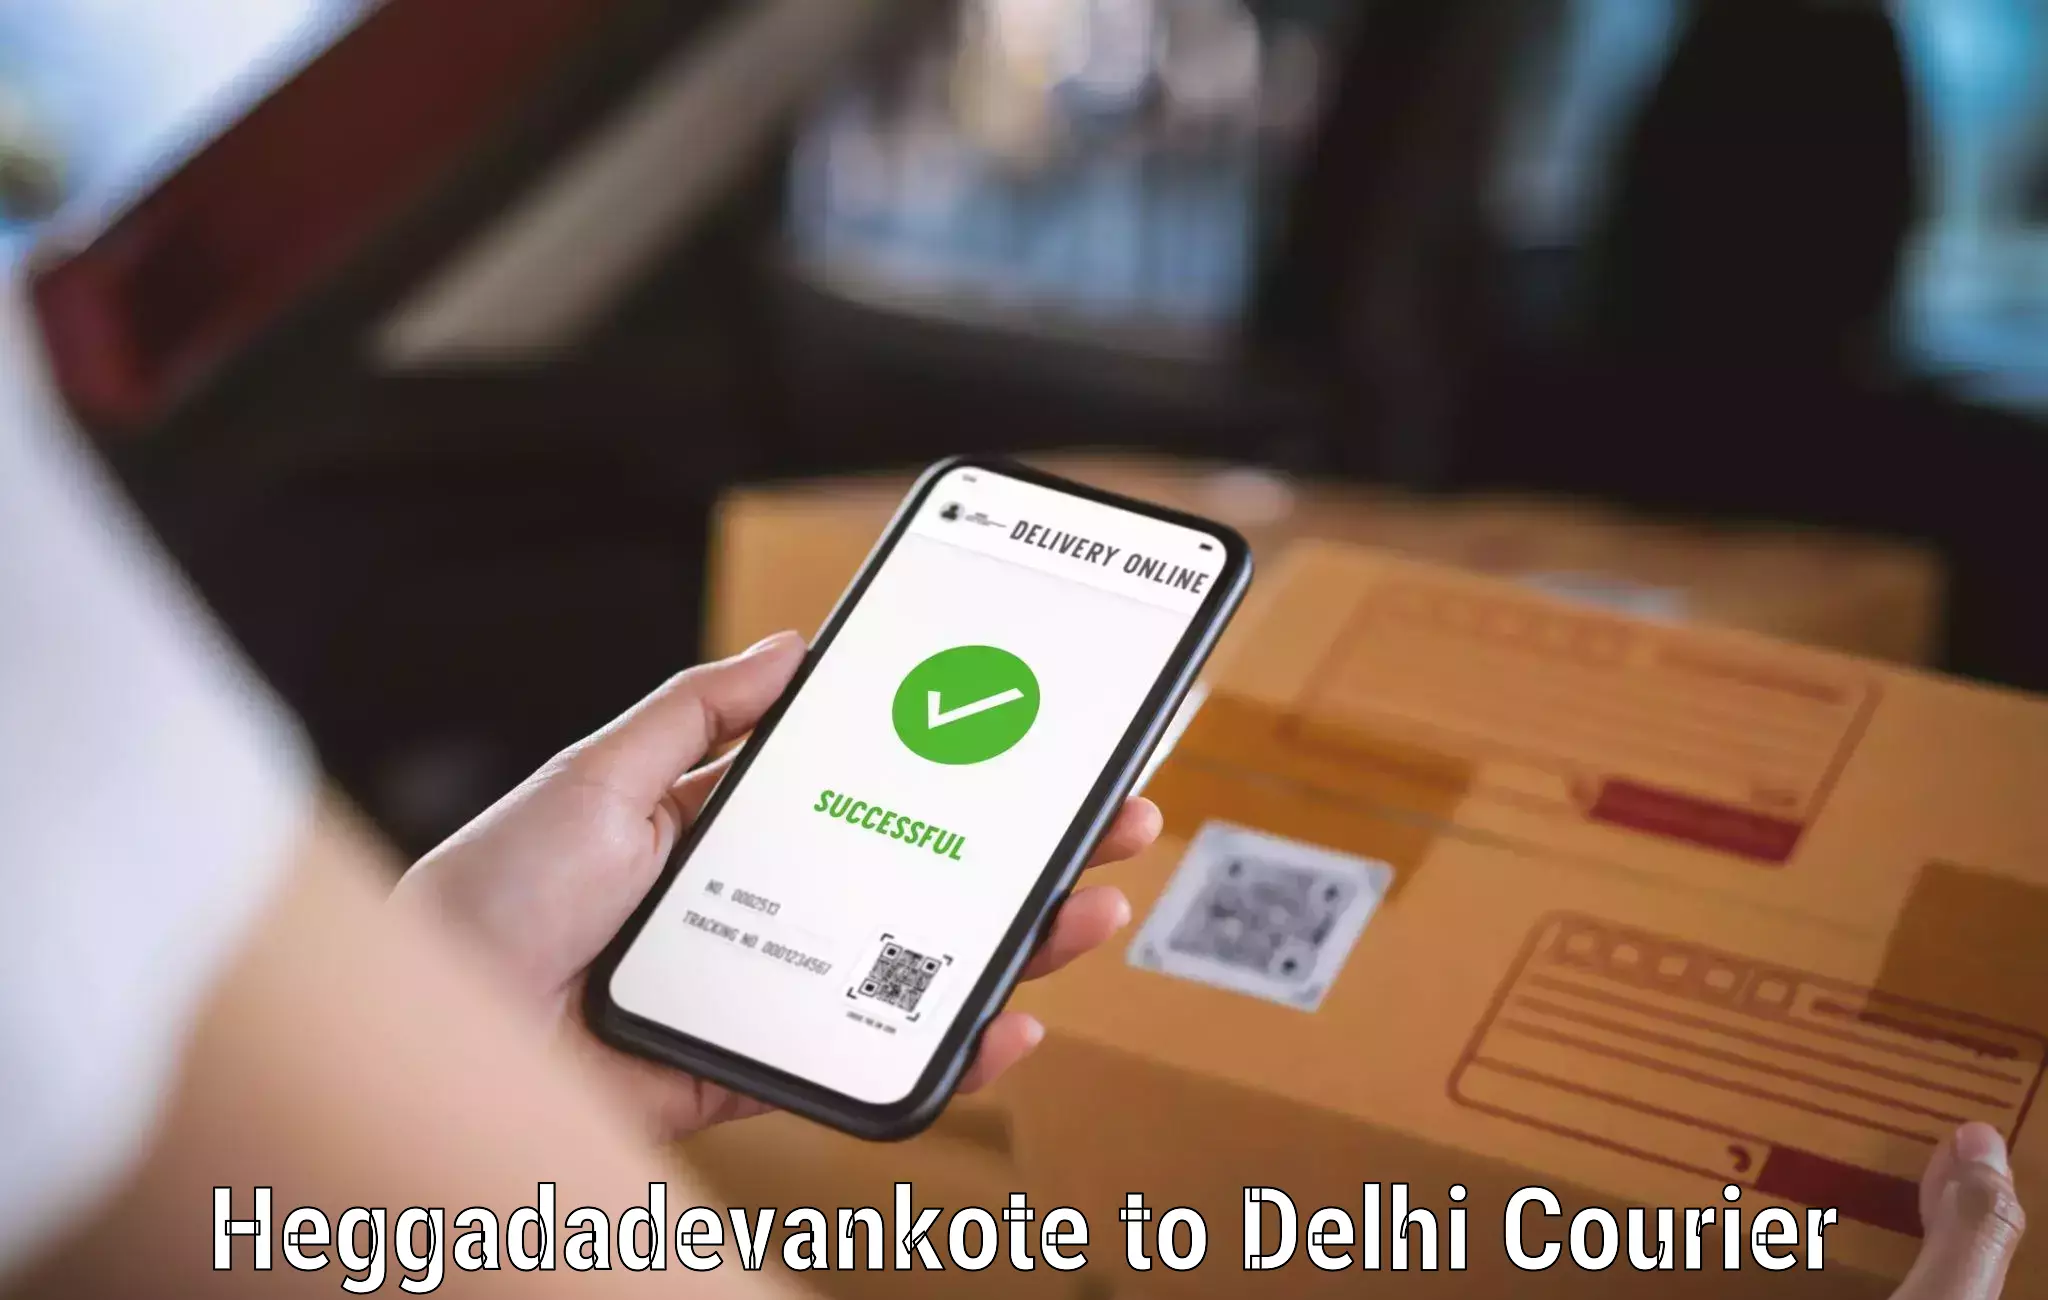 Personal courier services Heggadadevankote to Jamia Millia Islamia New Delhi